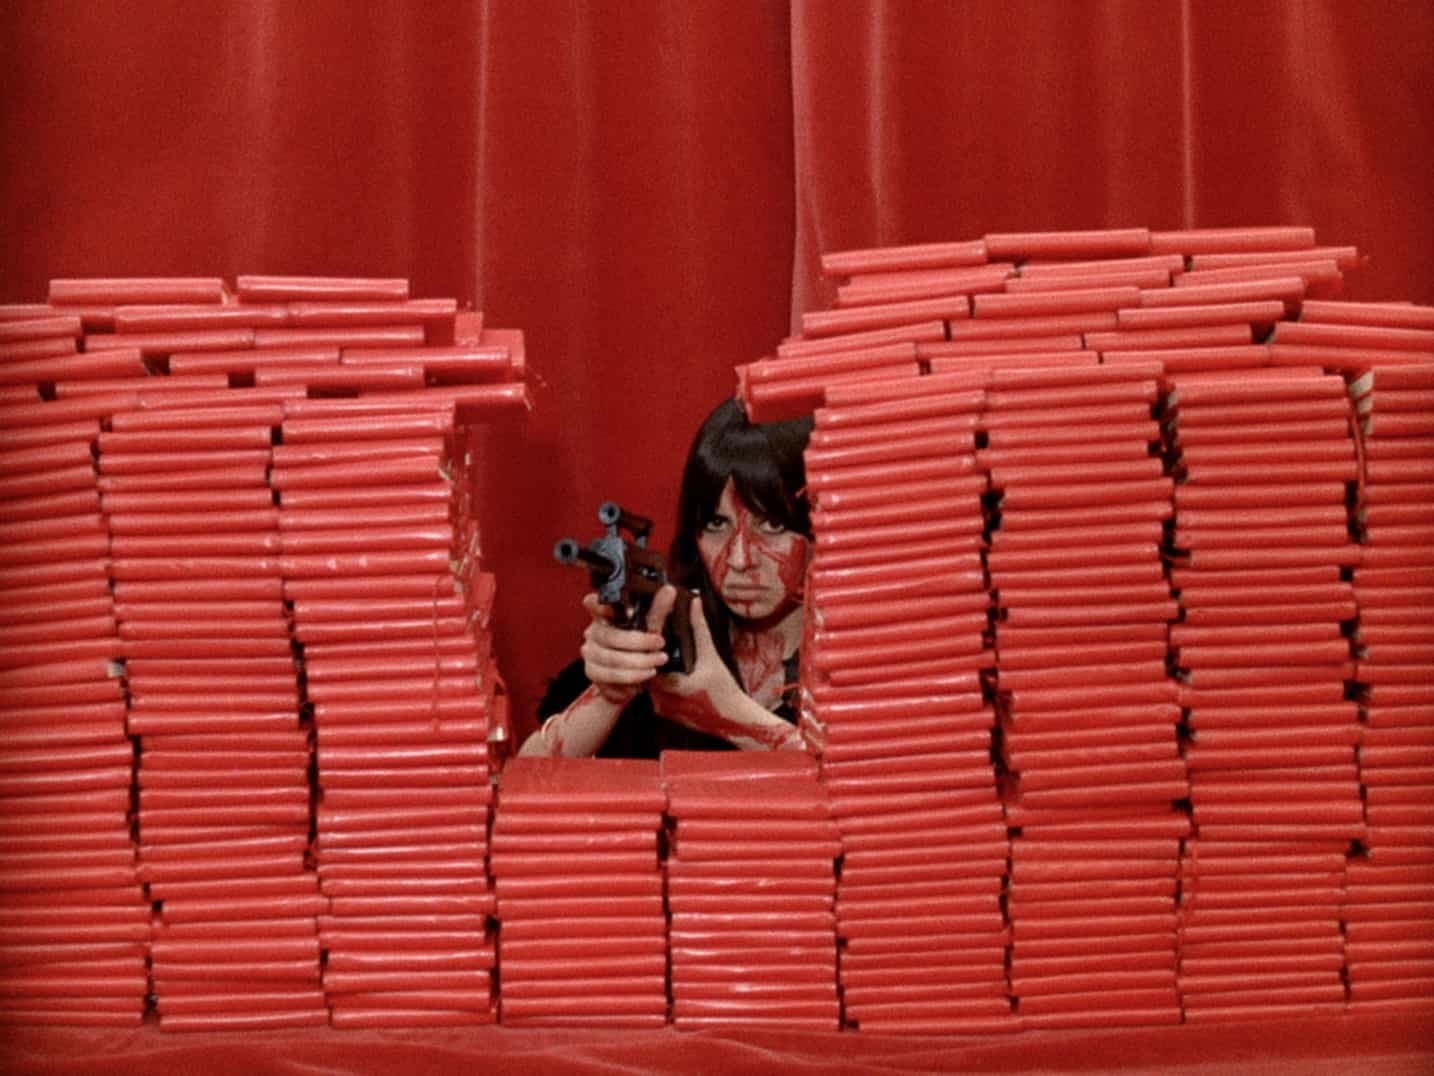 Film Socialisme, la coherencia radical y el nihilismo luminoso de Jean-Luc Godard